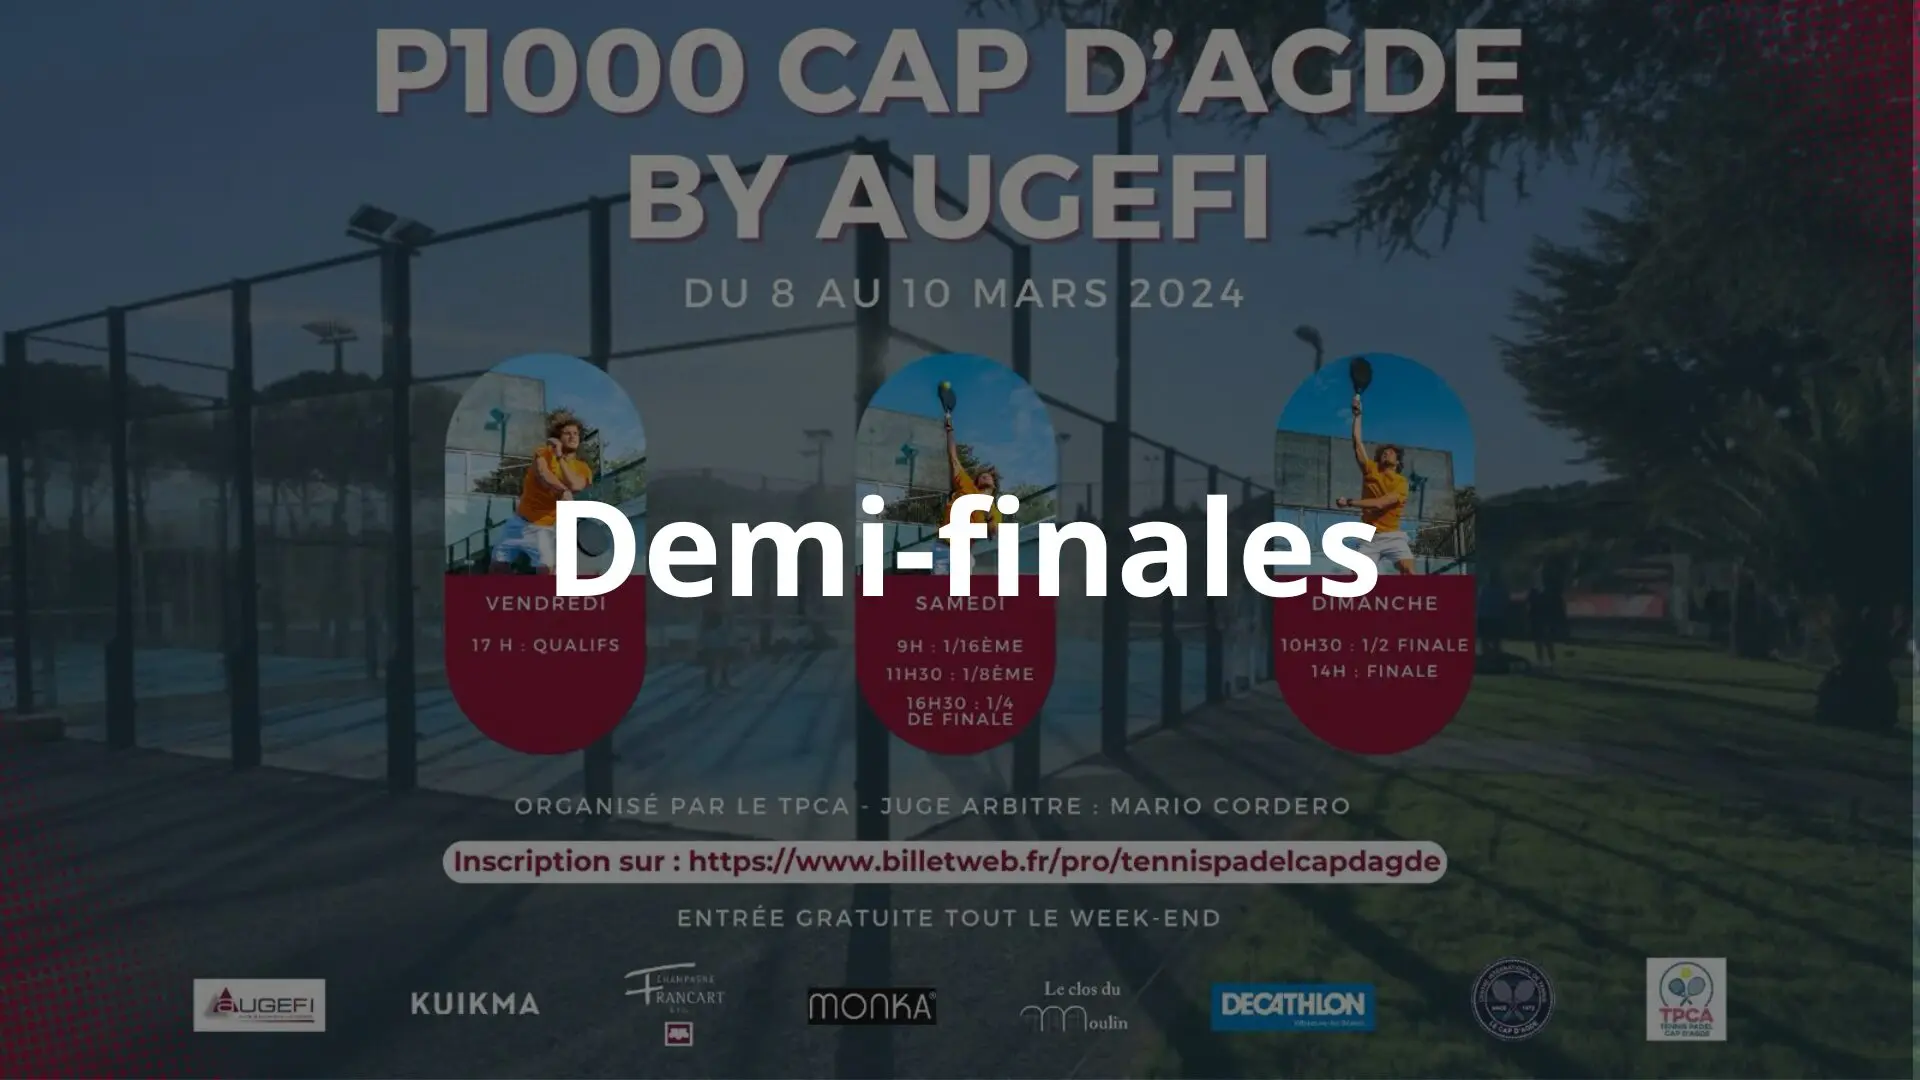 P1000 uomini Cap d’Agde – Pesante questa mattina in semifinale